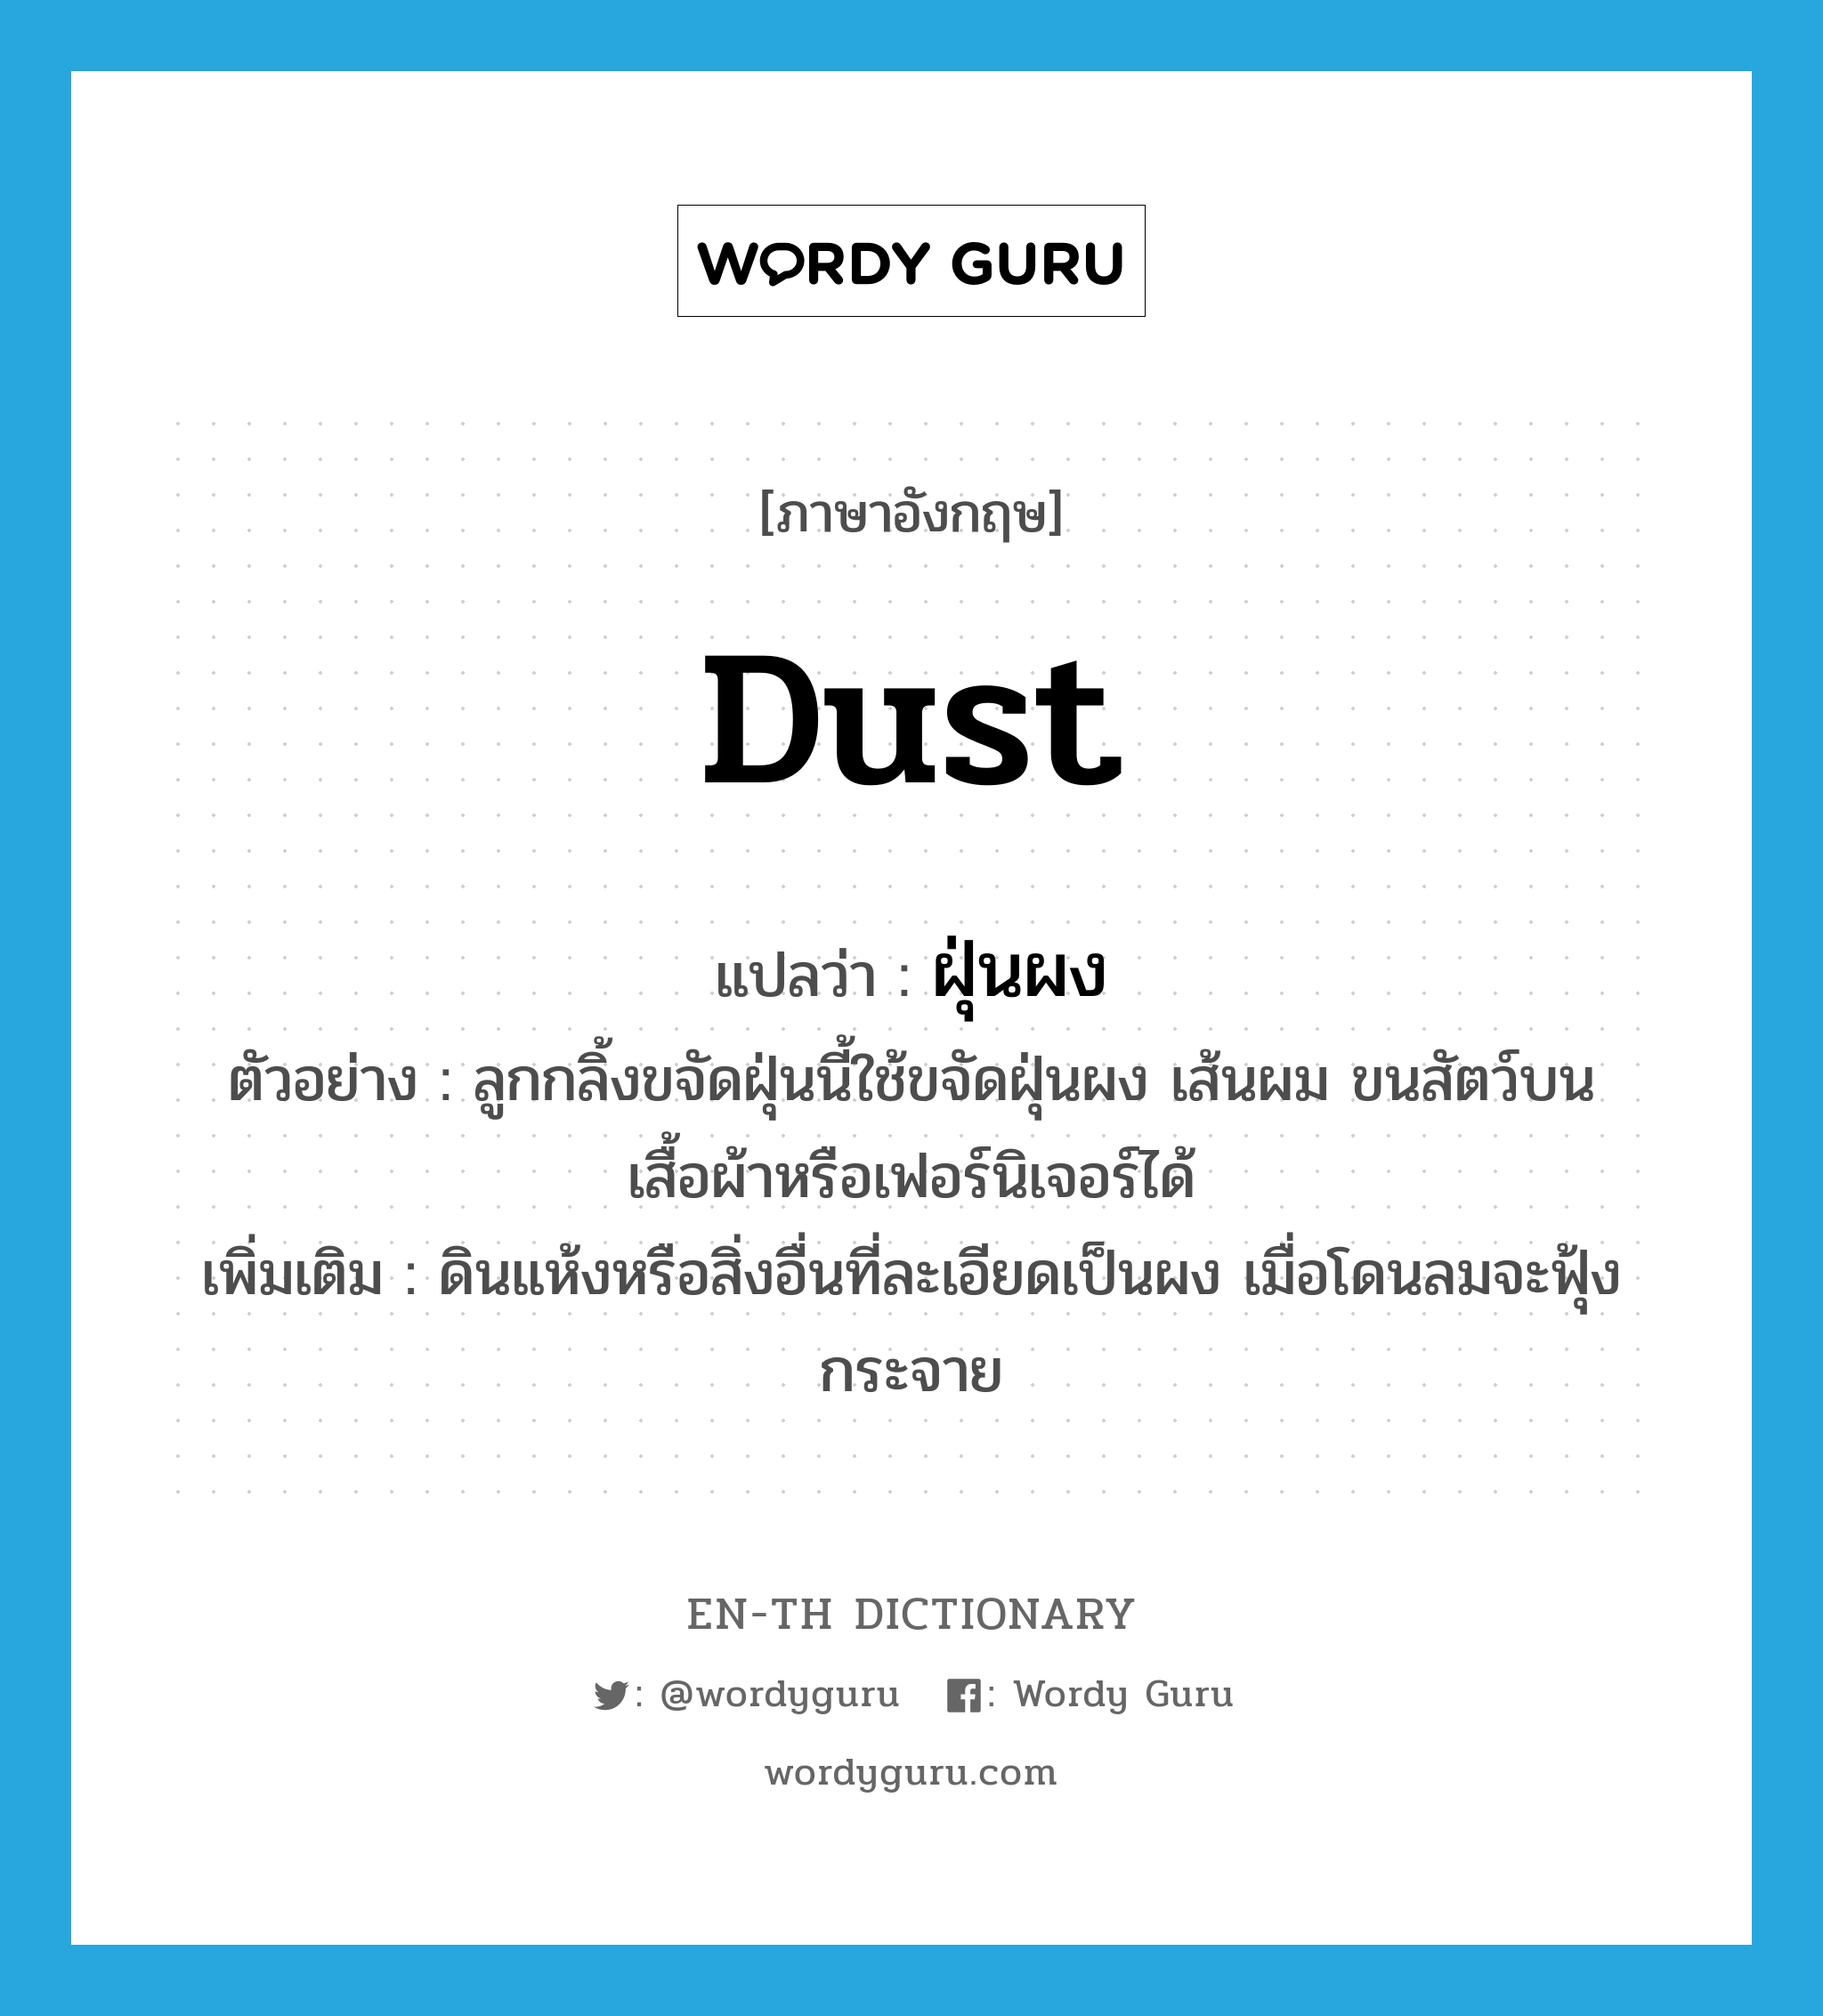 dust แปลว่า?, คำศัพท์ภาษาอังกฤษ dust แปลว่า ฝุ่นผง ประเภท N ตัวอย่าง ลูกกลิ้งขจัดฝุ่นนี้ใช้ขจัดฝุ่นผง เส้นผม ขนสัตว์บนเสื้อผ้าหรือเฟอร์นิเจอร์ได้ เพิ่มเติม ดินแห้งหรือสิ่งอื่นที่ละเอียดเป็นผง เมื่อโดนลมจะฟุ้งกระจาย หมวด N